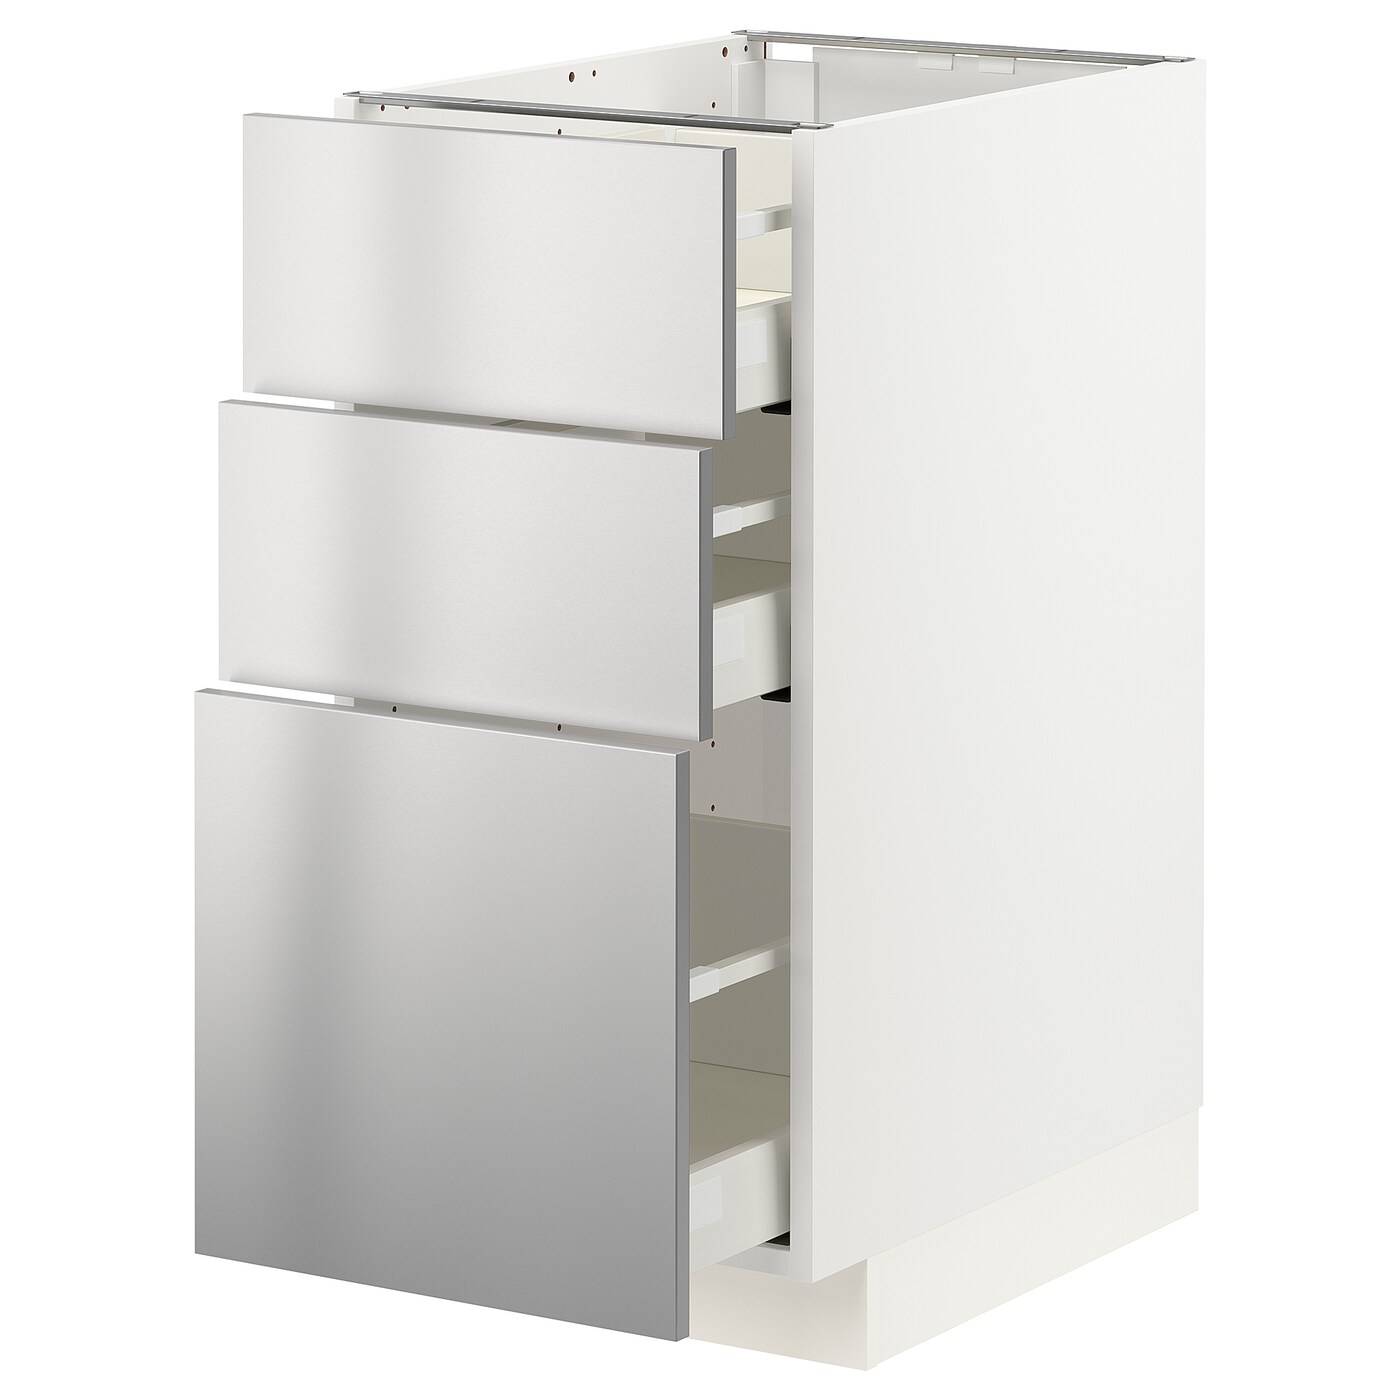 Напольный шкаф - IKEA METOD MAXIMERA, 88x62x40см, белый/ светло-серый, МЕТОД МАКСИМЕРА ИКЕА